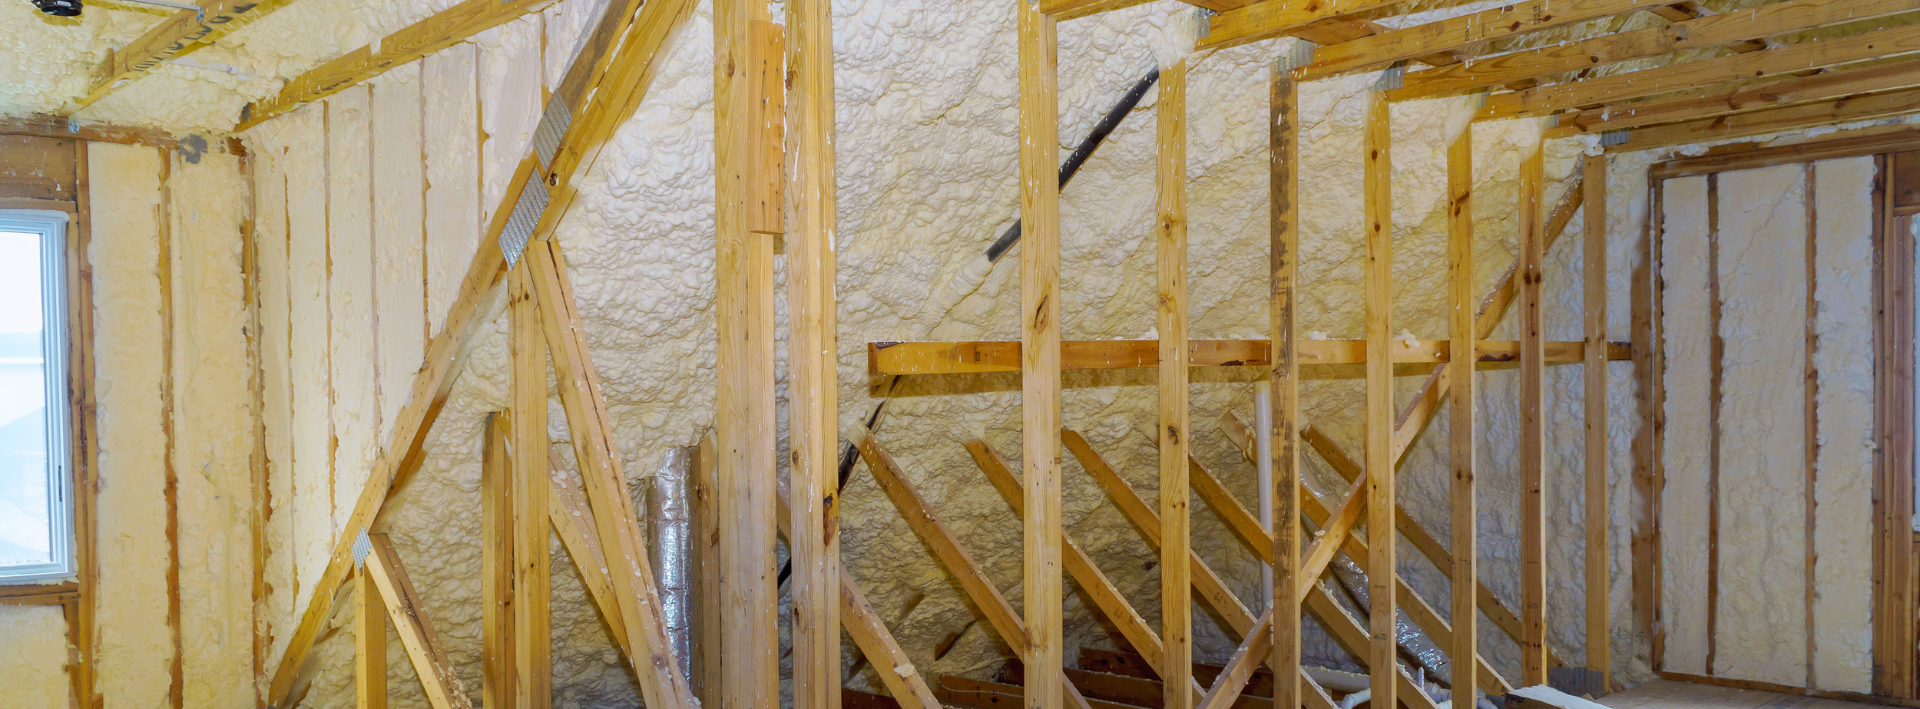 Attic insulation for mold prevention